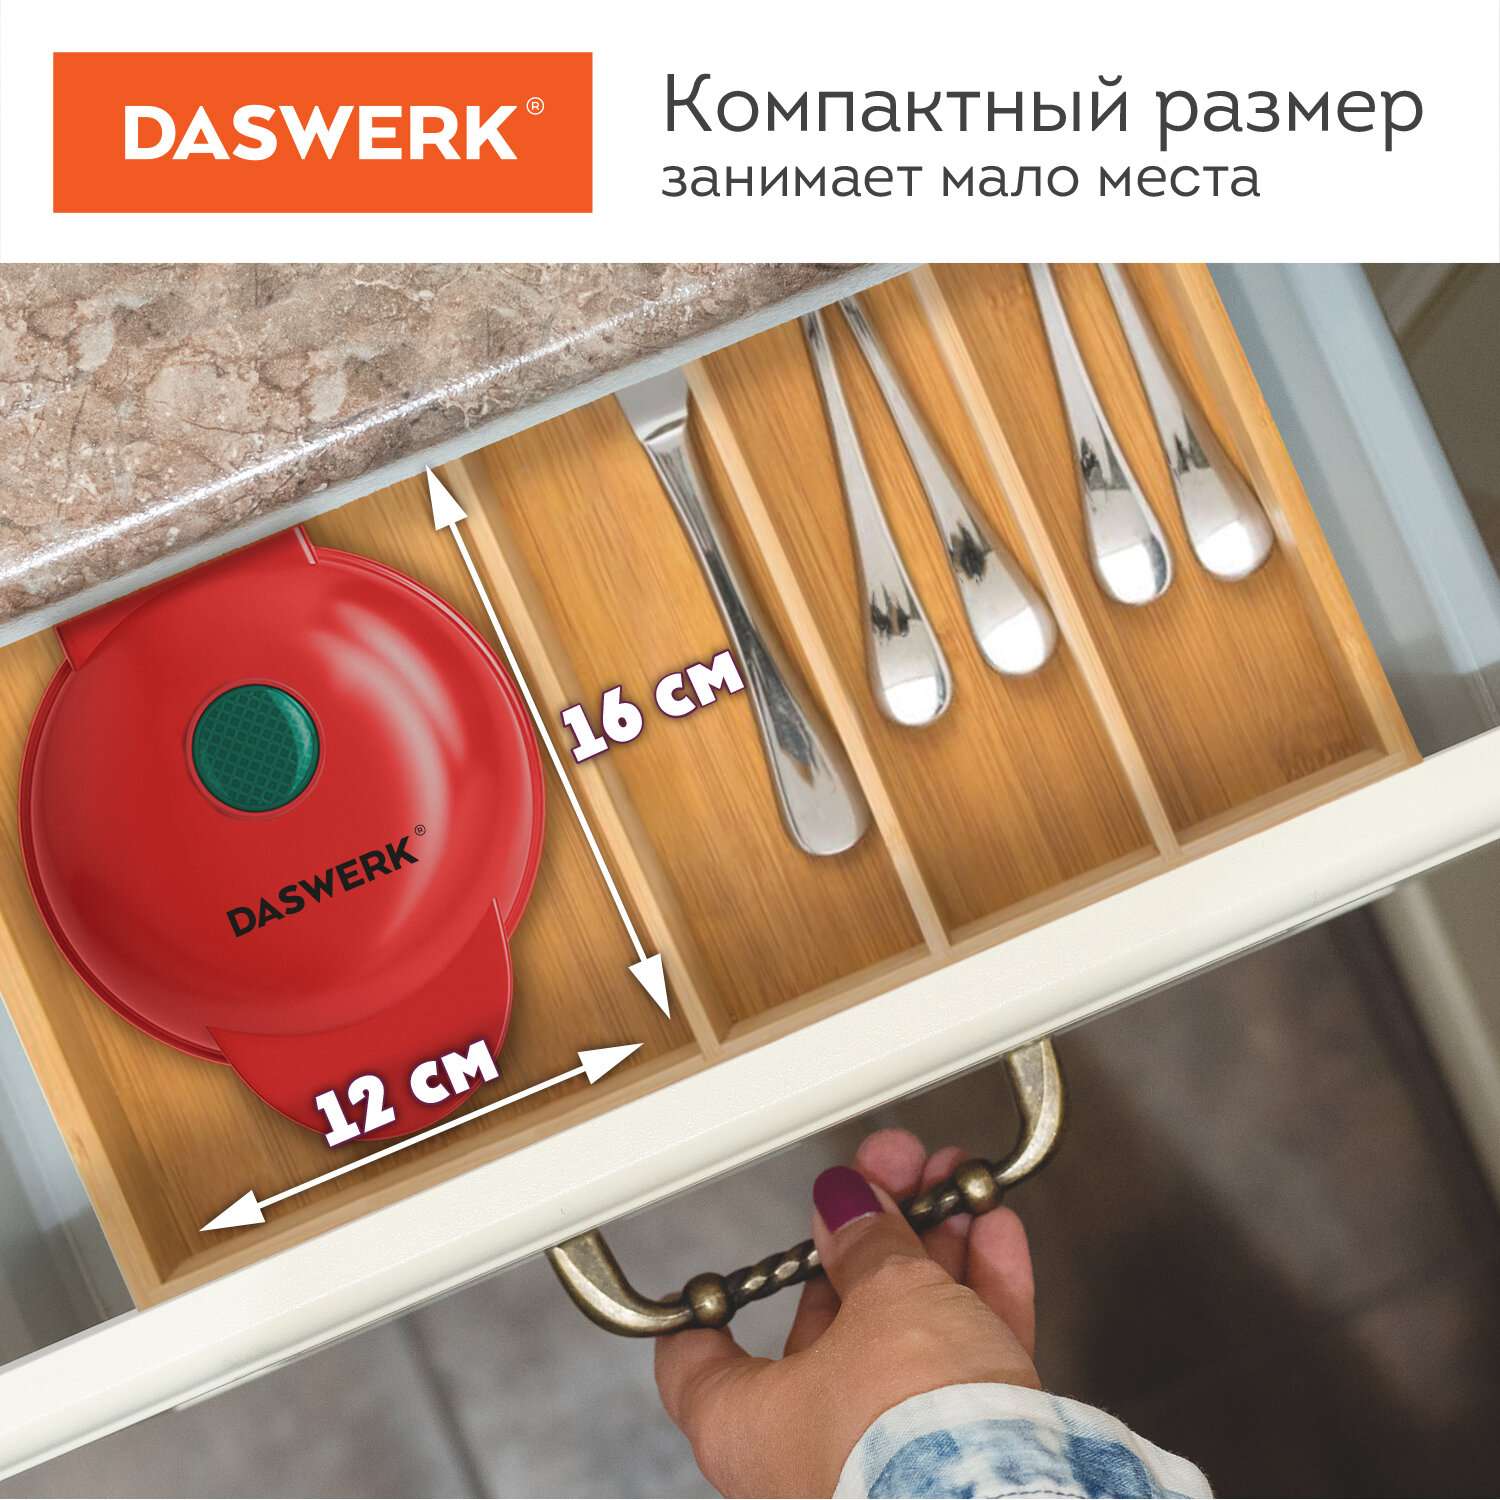 Вафельница DASWERK бутербродница электрическая для венских вафель сердечек - фото 2